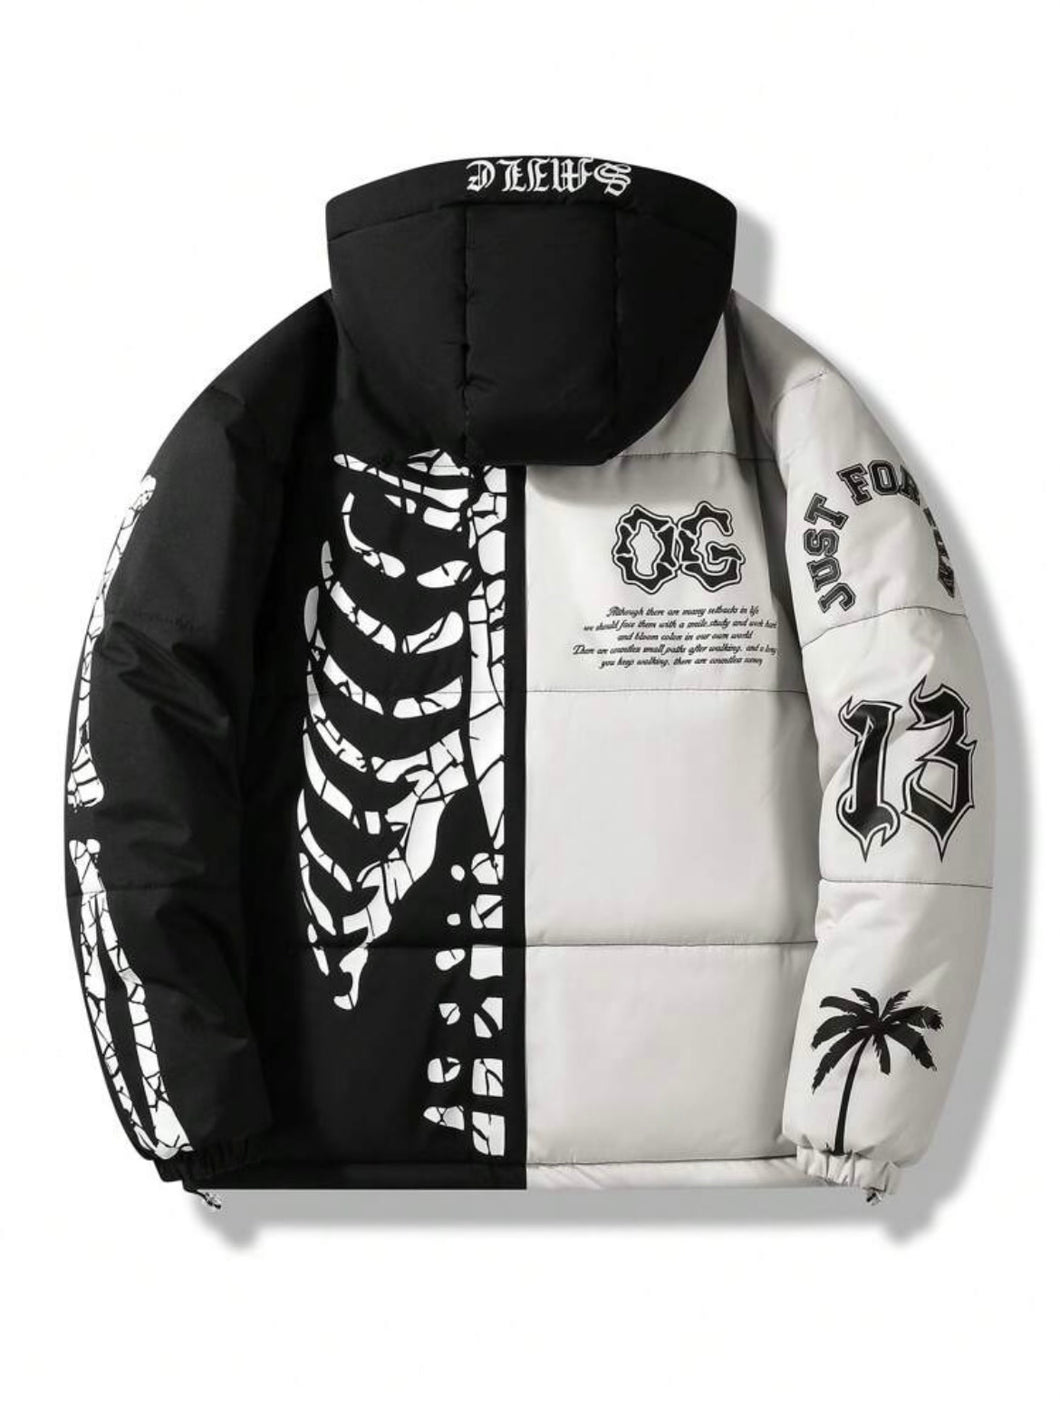 The OG jacket